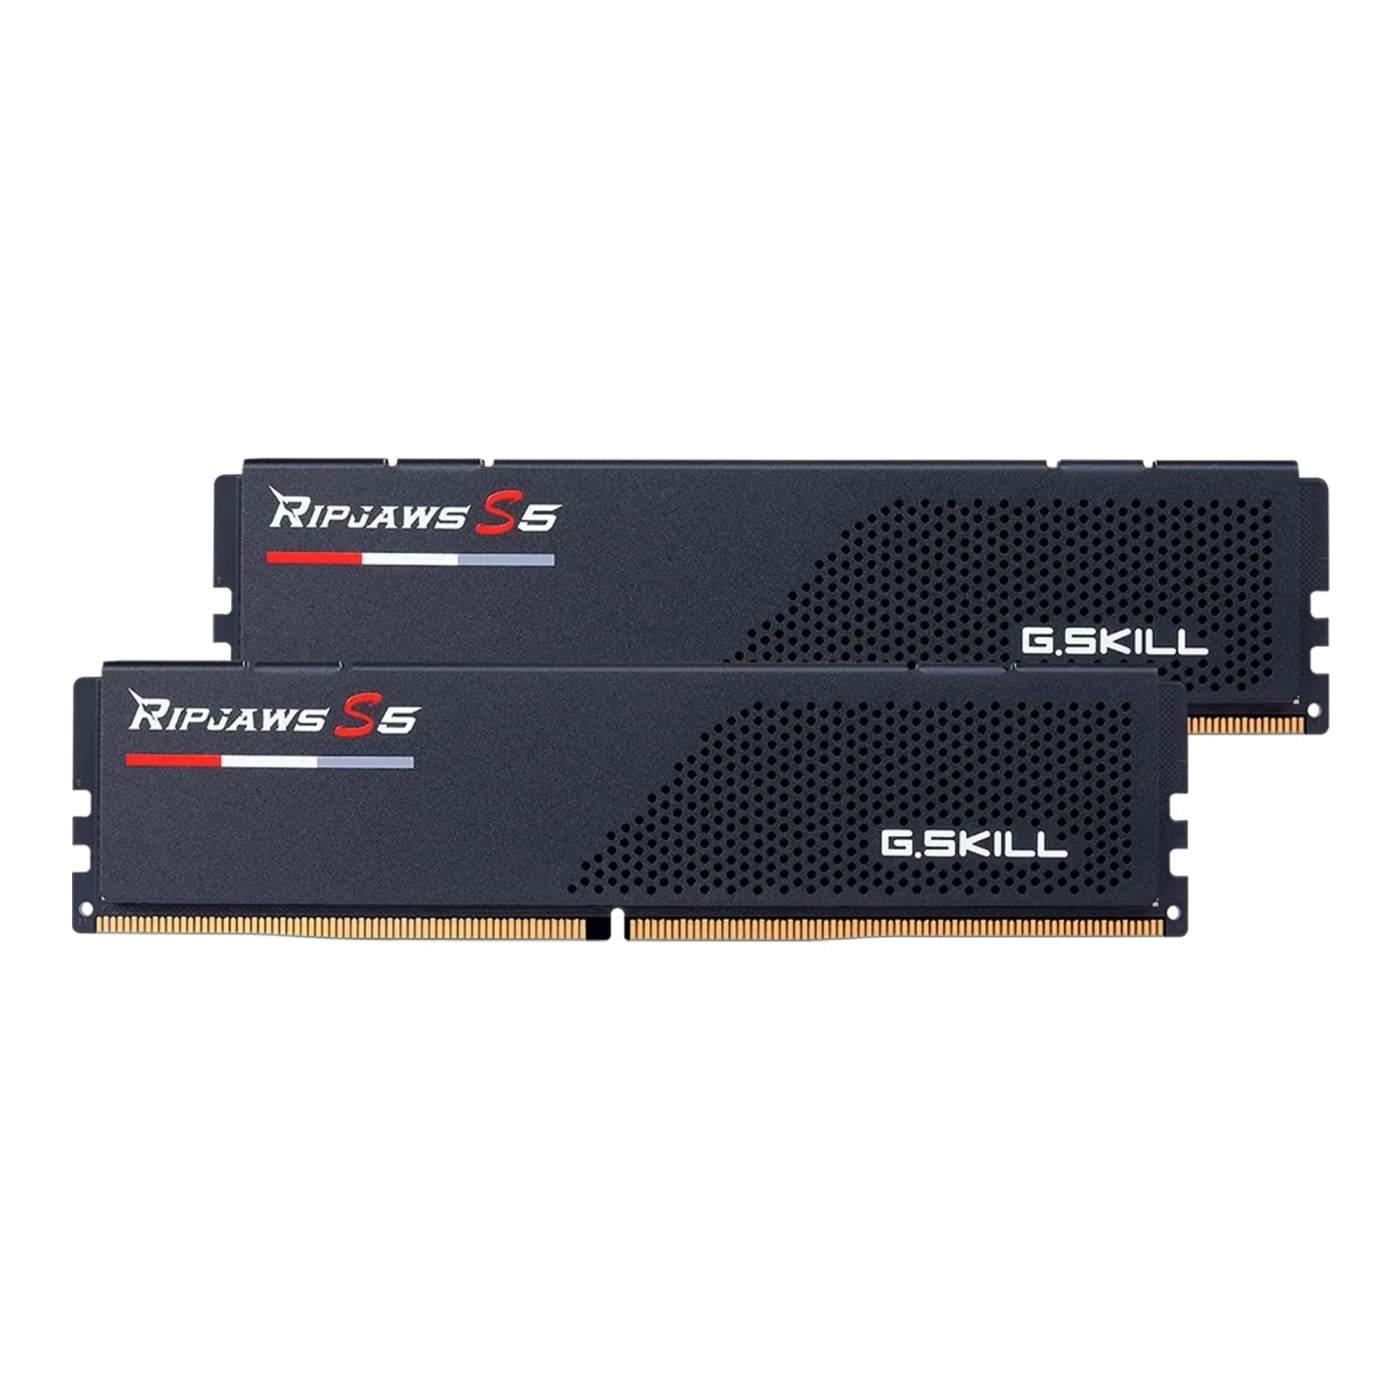 Купить Модуль памяти G.Skill Ripjaws S5 Black DDR5-5600 32GB (2x16GB) CL28-34-34-89 1.35V - фото 2